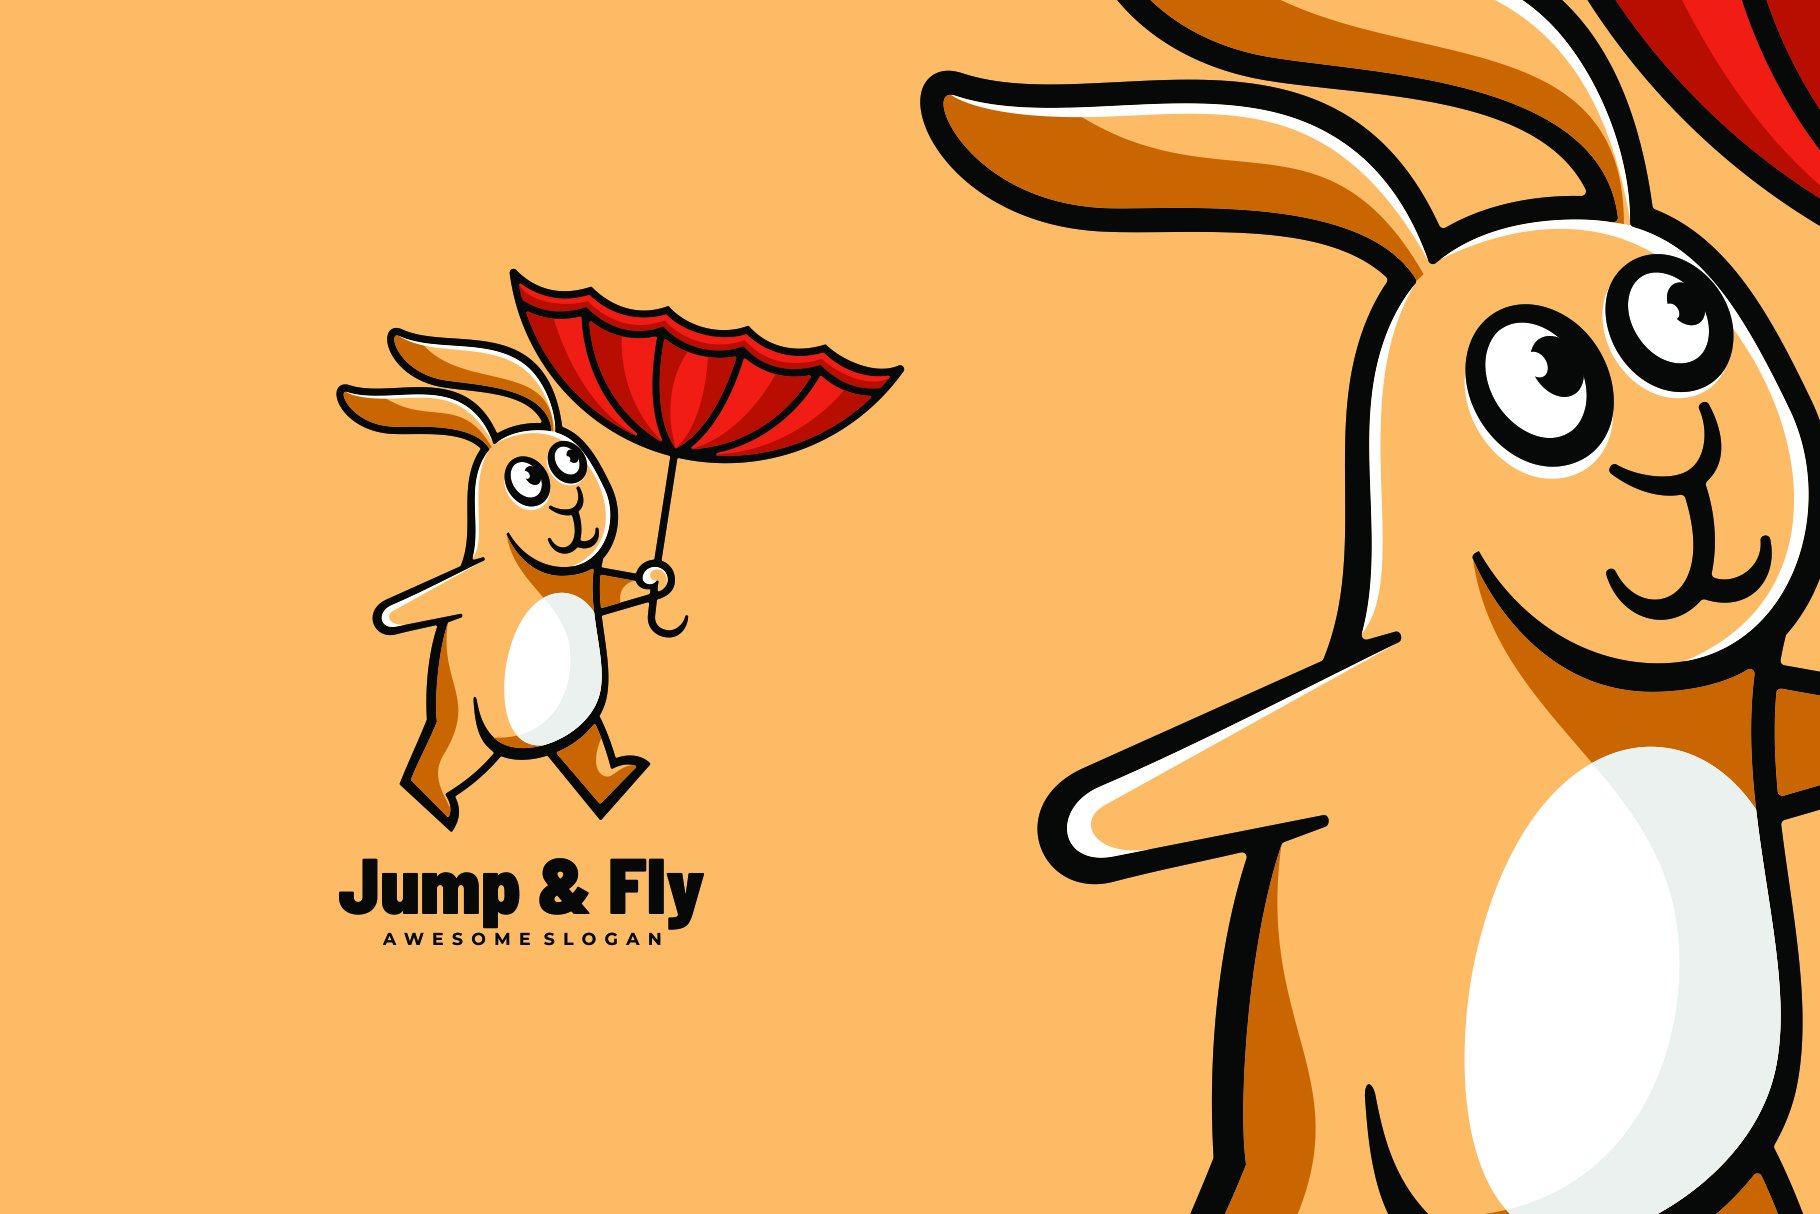 Bunny Mascot Cartoon Logo cover image.